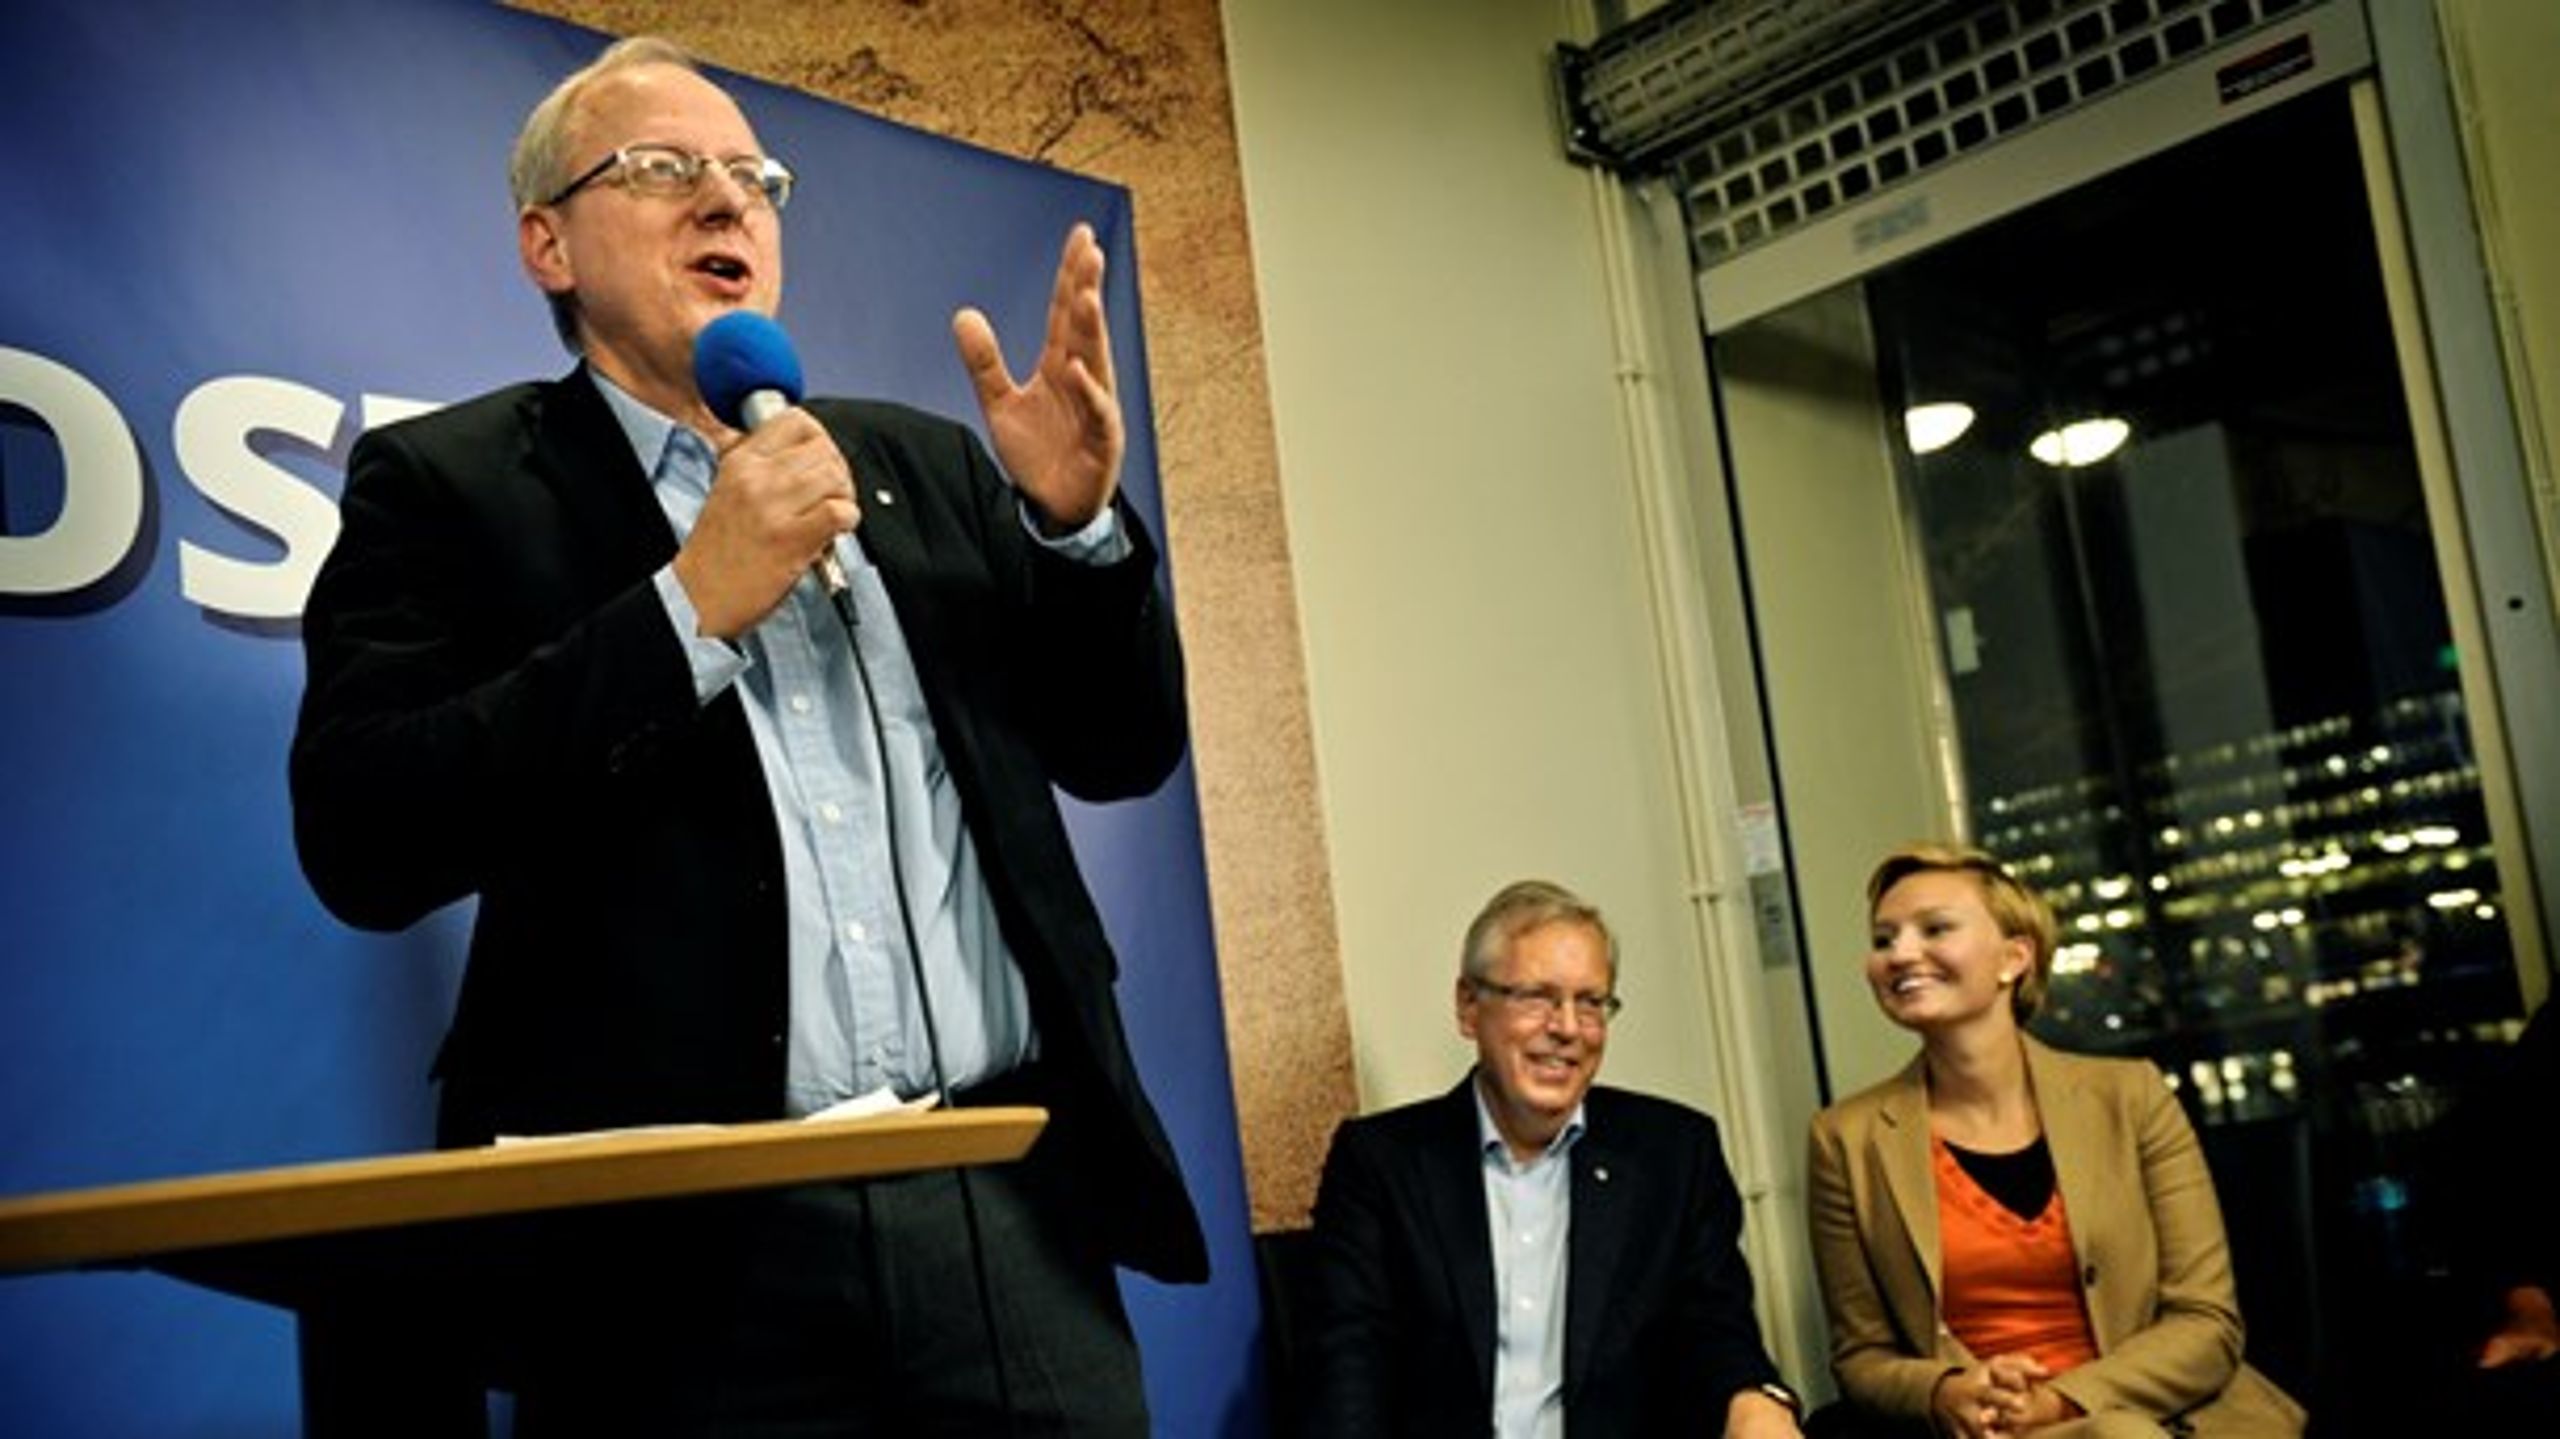 Bild från 2012 när Bengt Germundsson tillsammans med Ebba Busch försökte få Mats Odell vald till ny partiledare